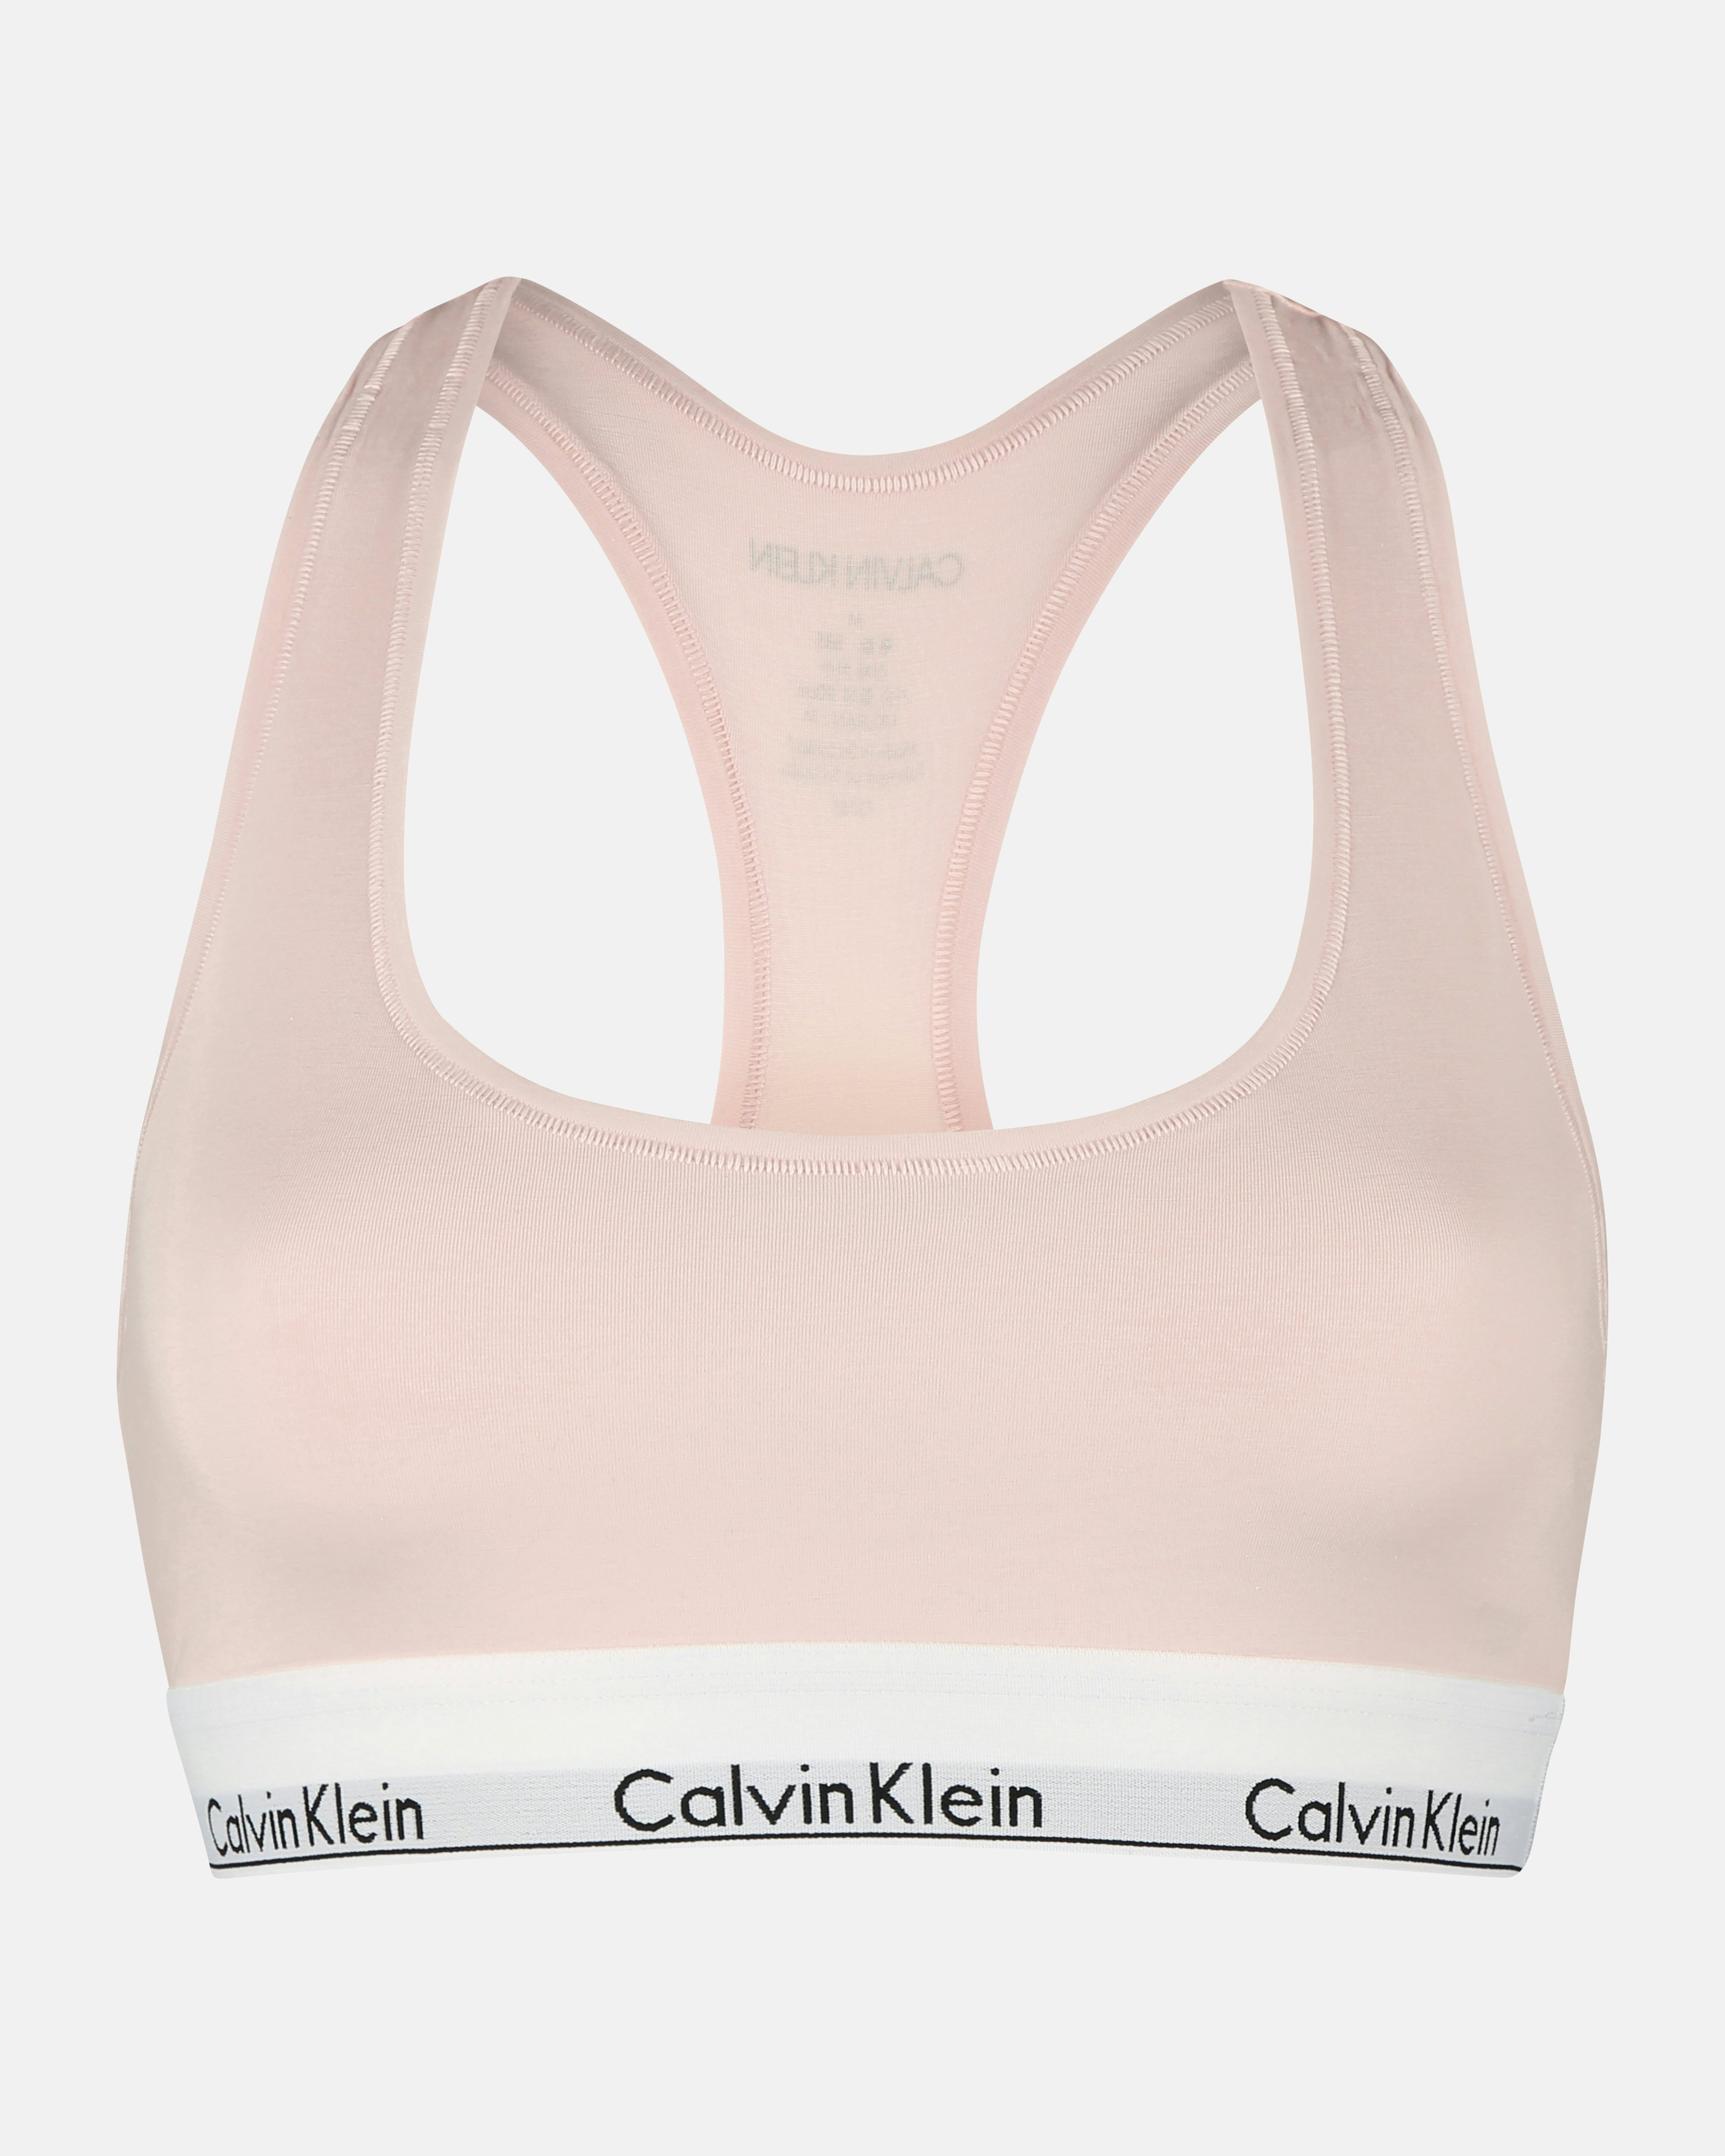 Bras Calvin Klein Women's Bralette C/O Pink